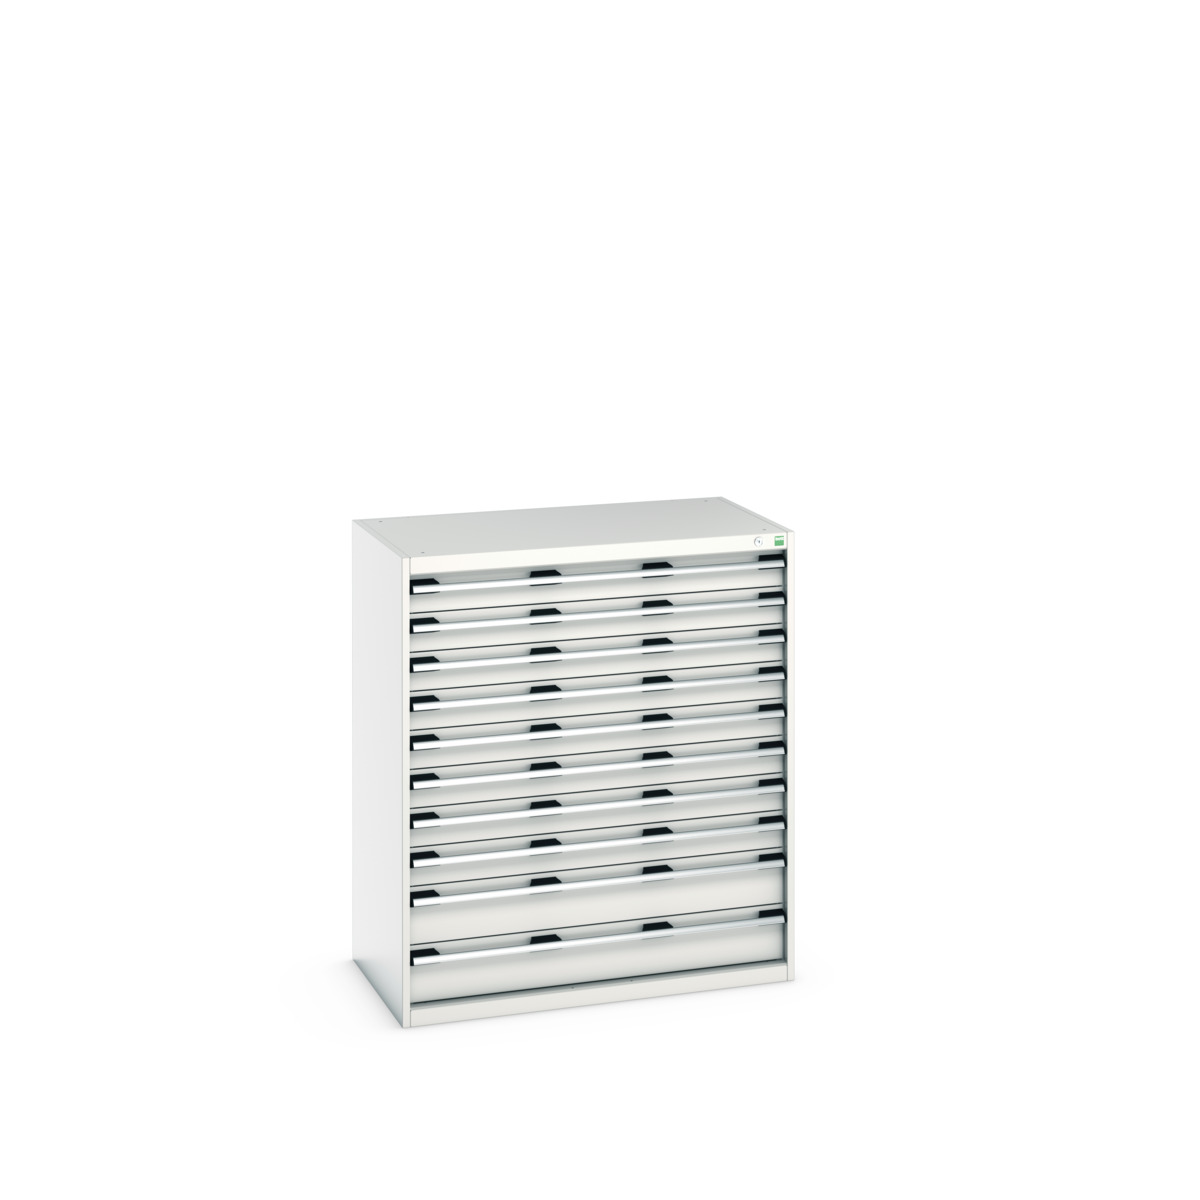 40021042.16V - cubio drawer cabinet